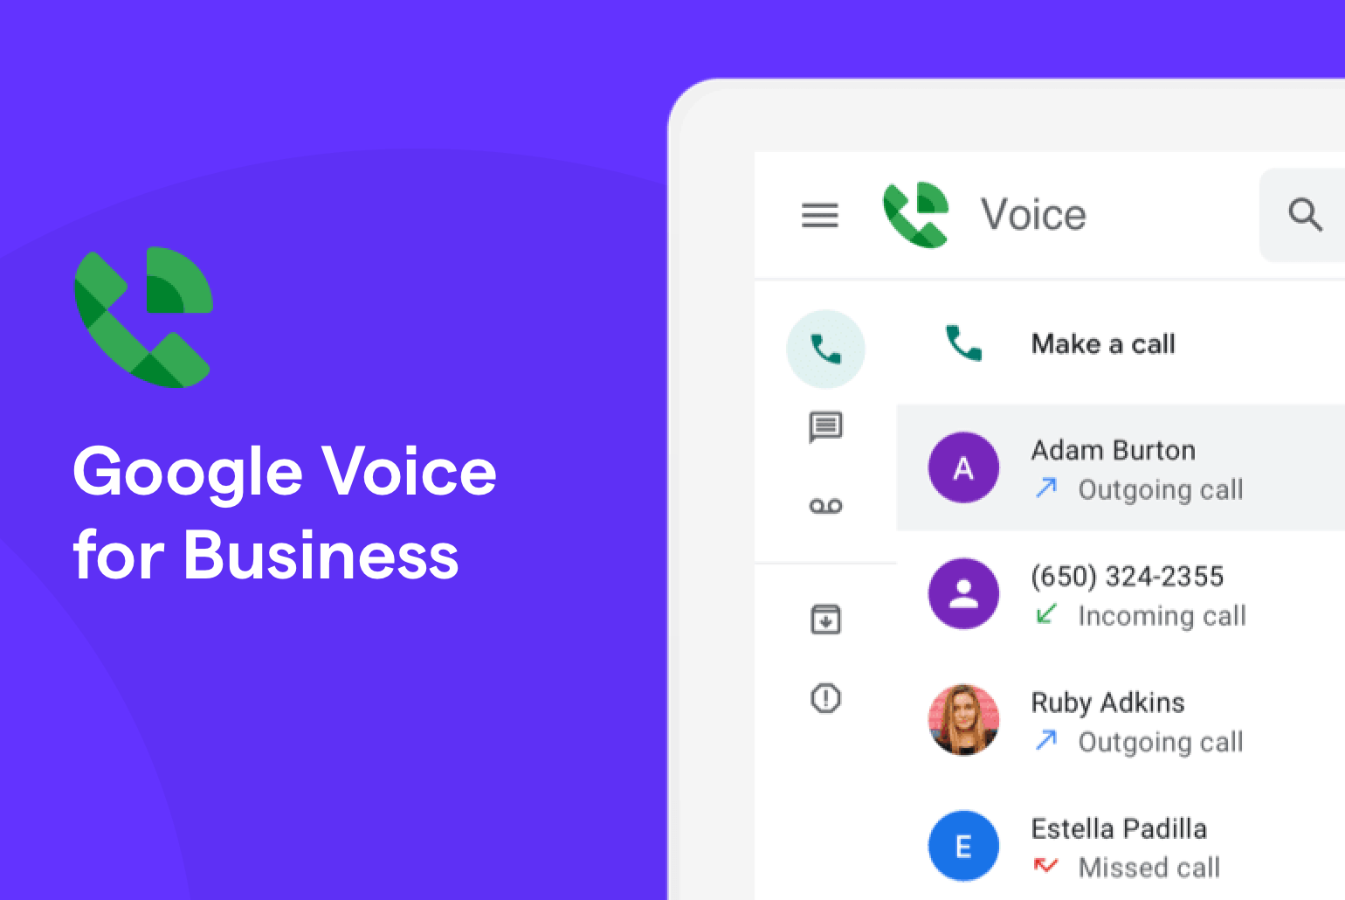 Google Voice 2 Pcs | Google Voice Number | Voice USA...